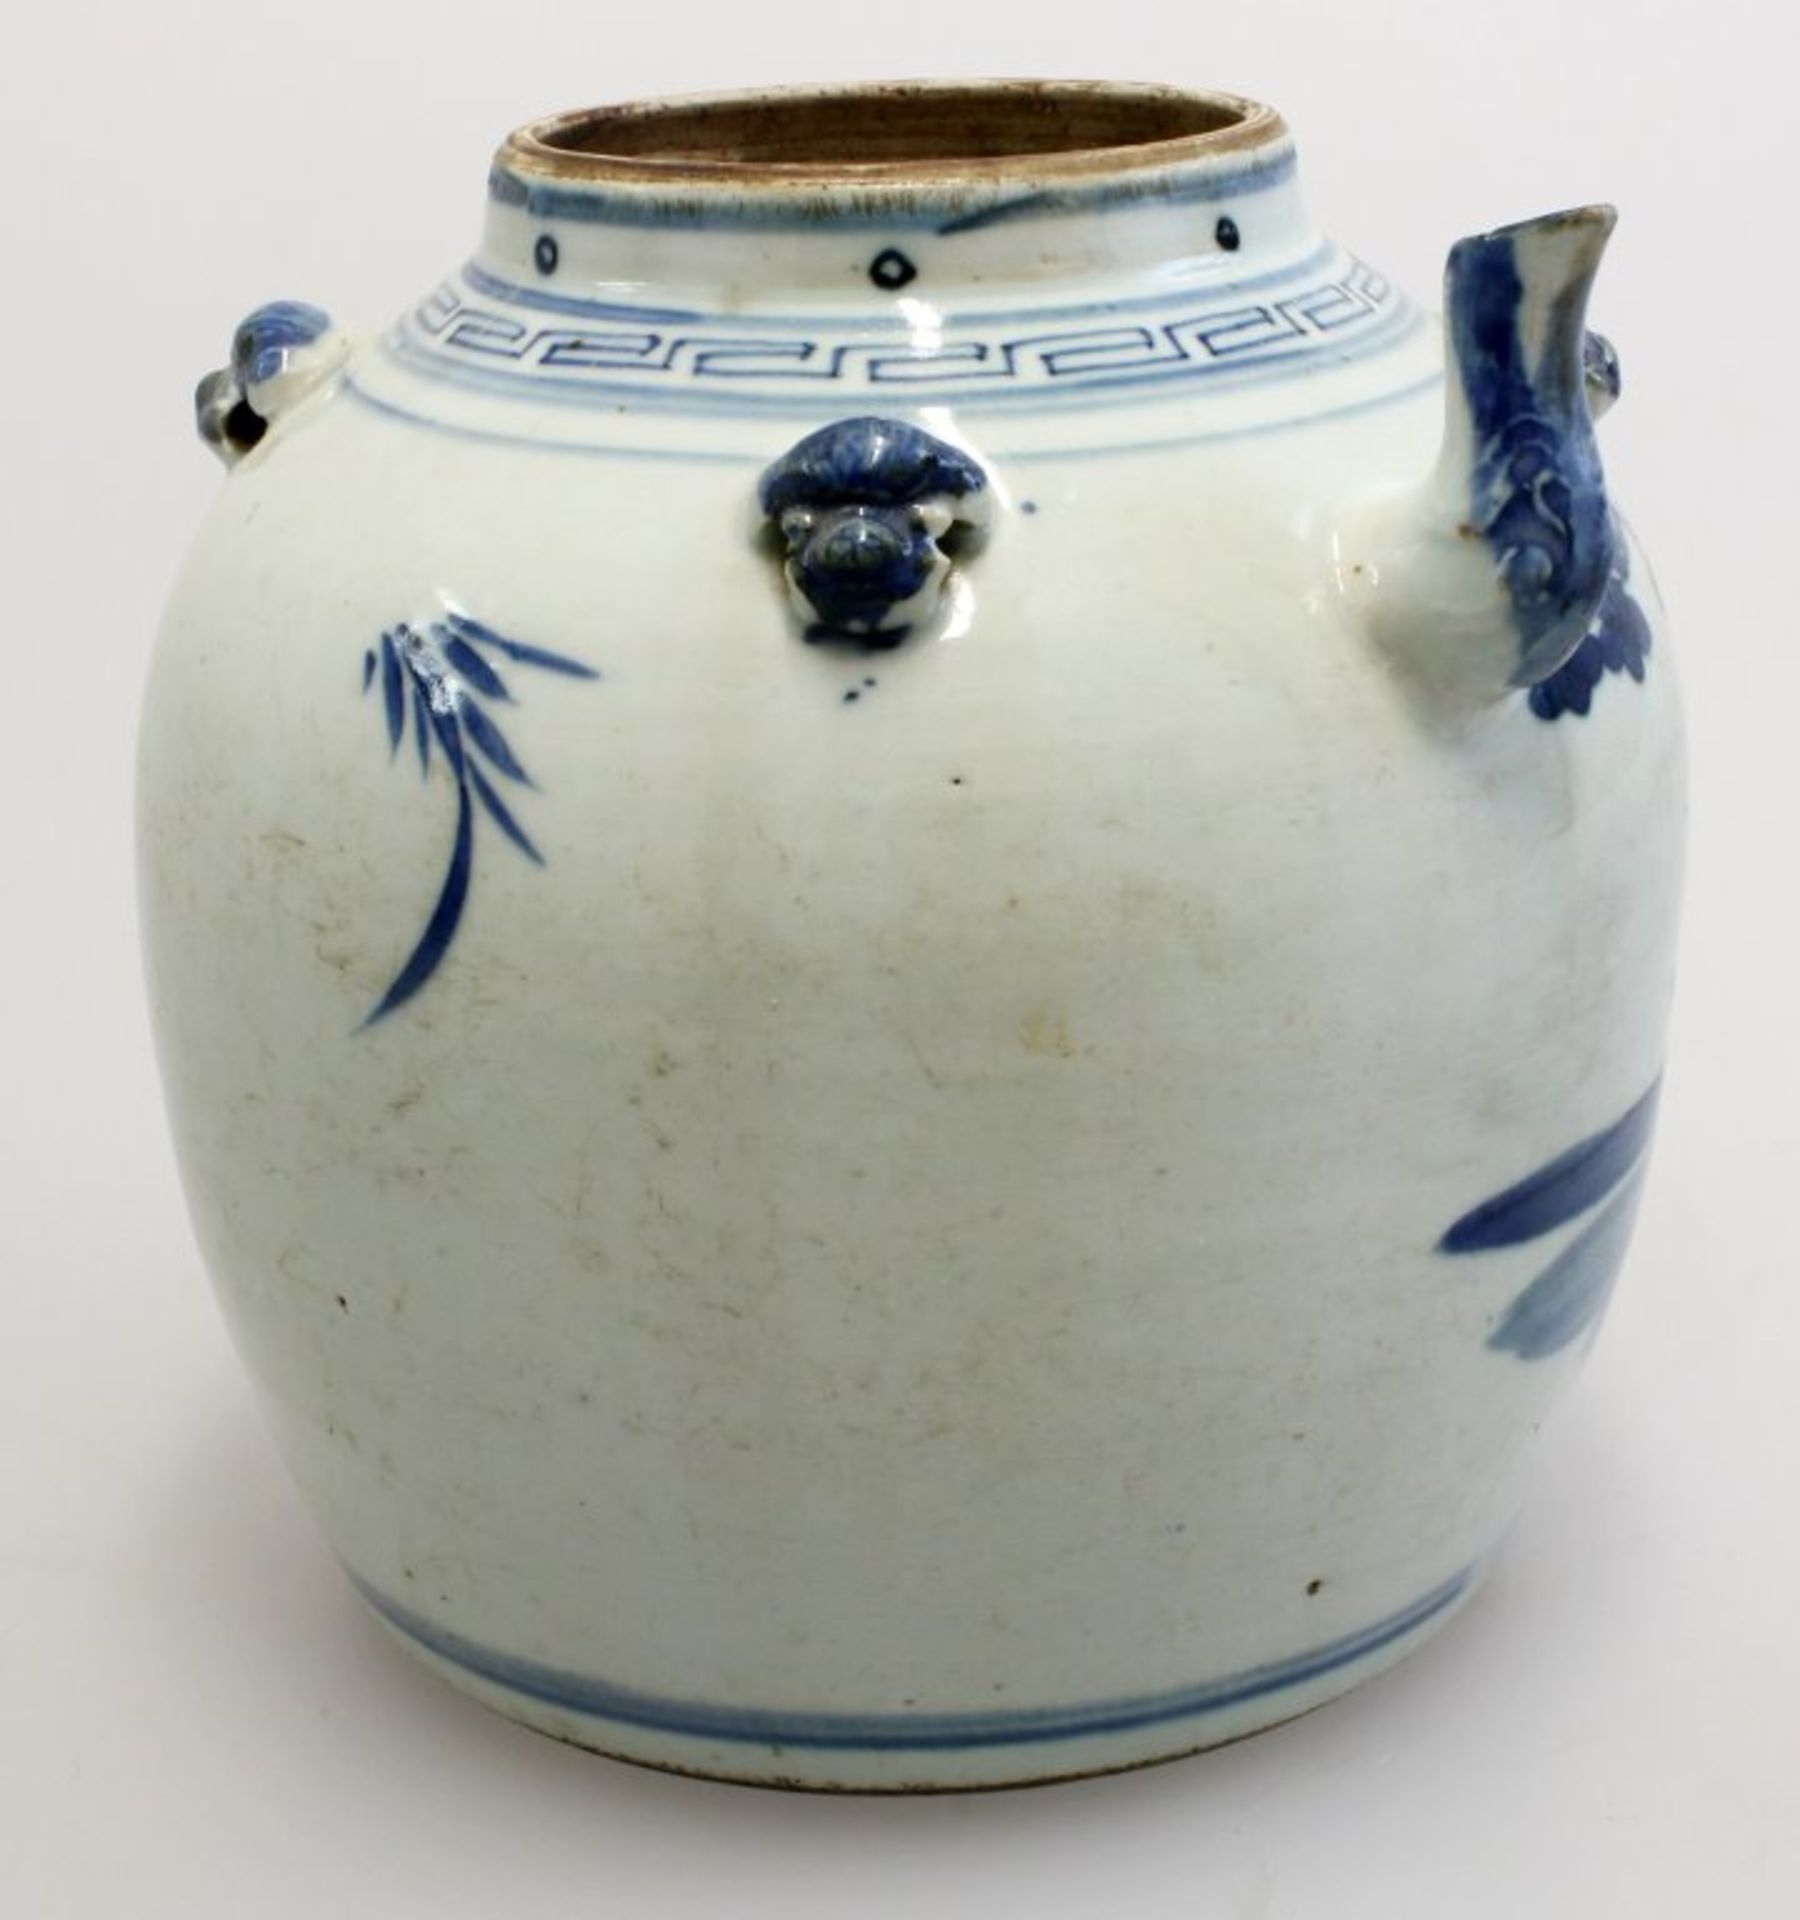 Chinesische Teekanne - Ming-DynastieCharakteristische Blaumalerei auf grauen Scherben, - Bild 3 aus 3